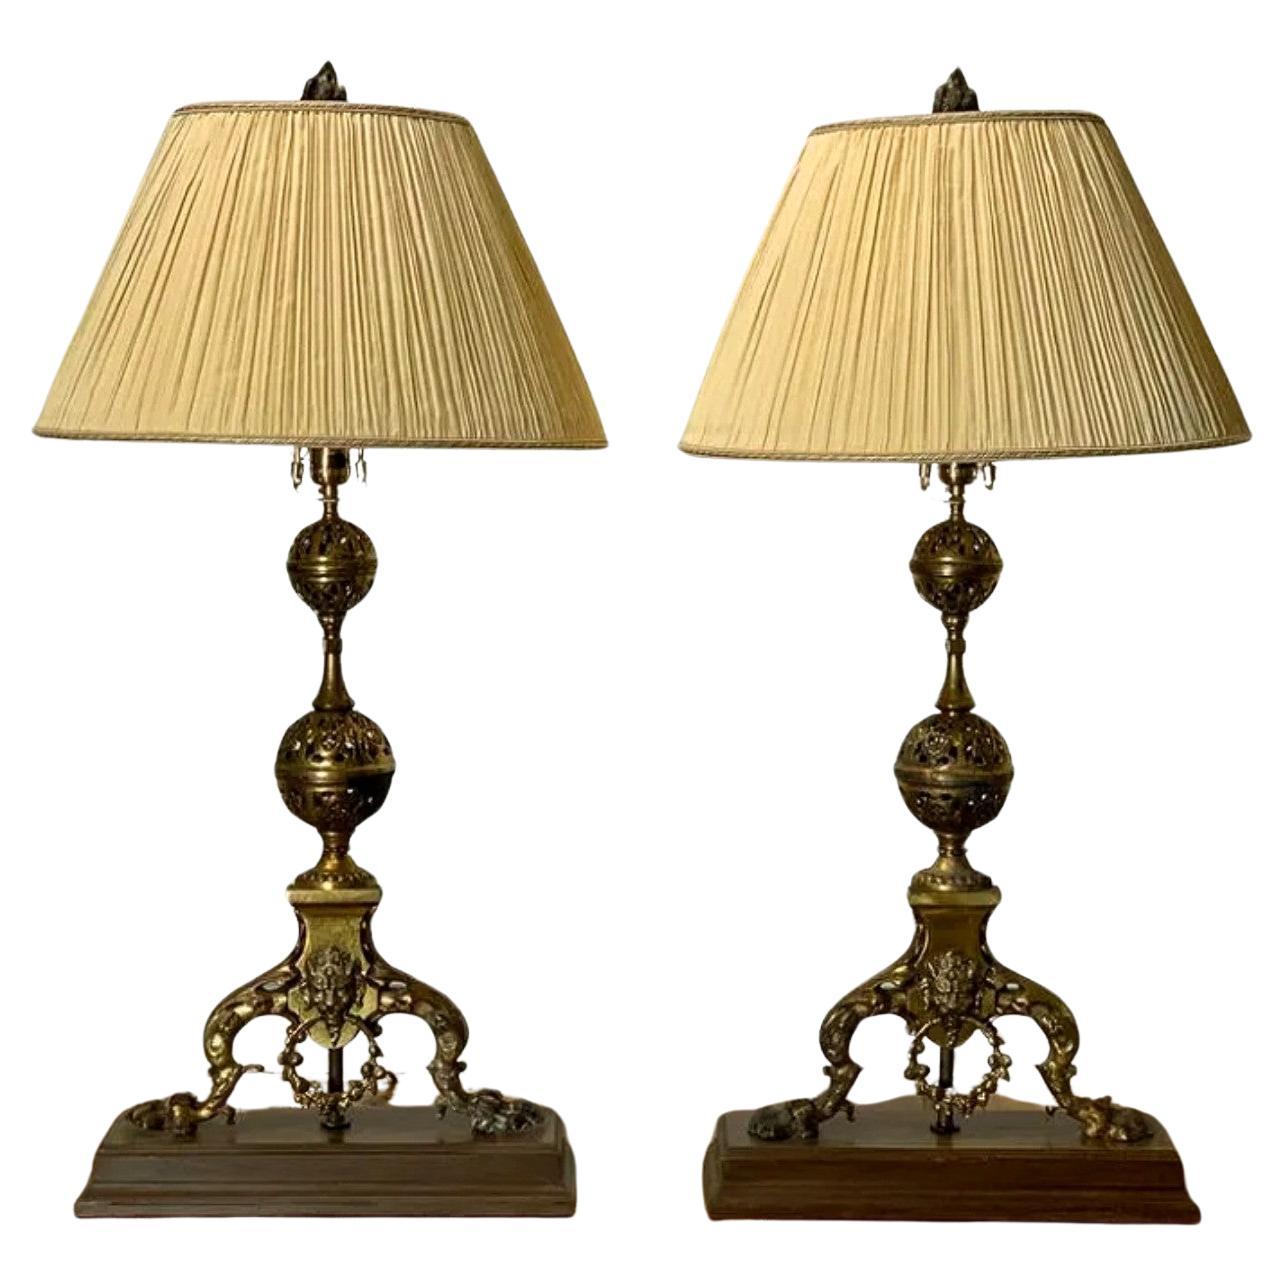 Paire de chandeliers de style Revive gothique français du 19e siècle, montés en lampe de table 